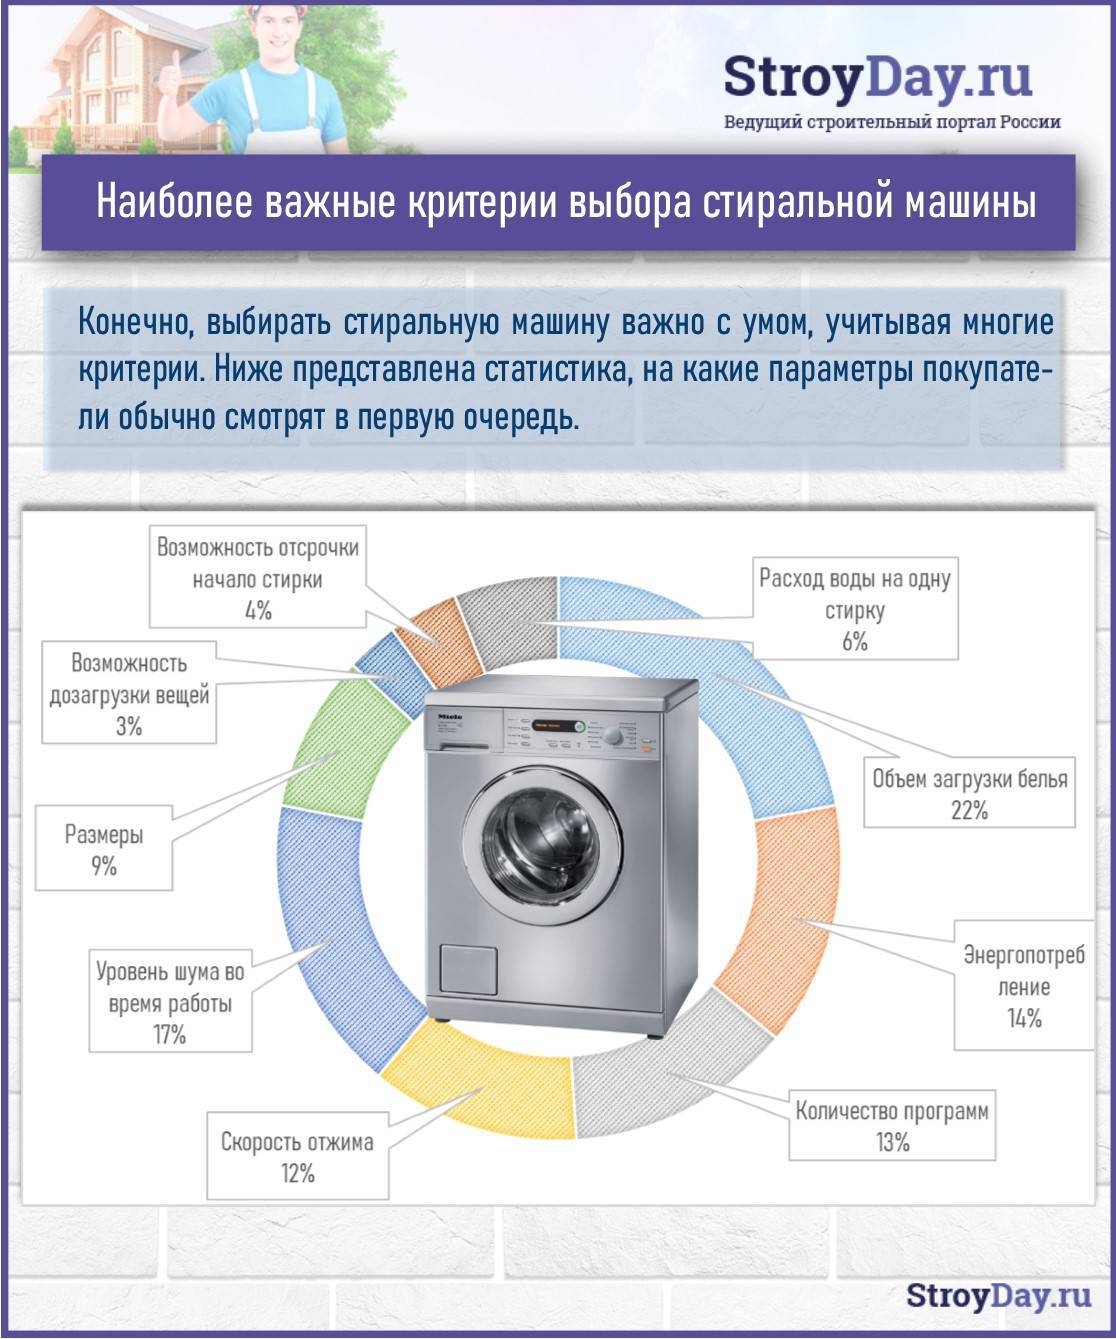 Как проверить стиральную машину при покупке и доставке